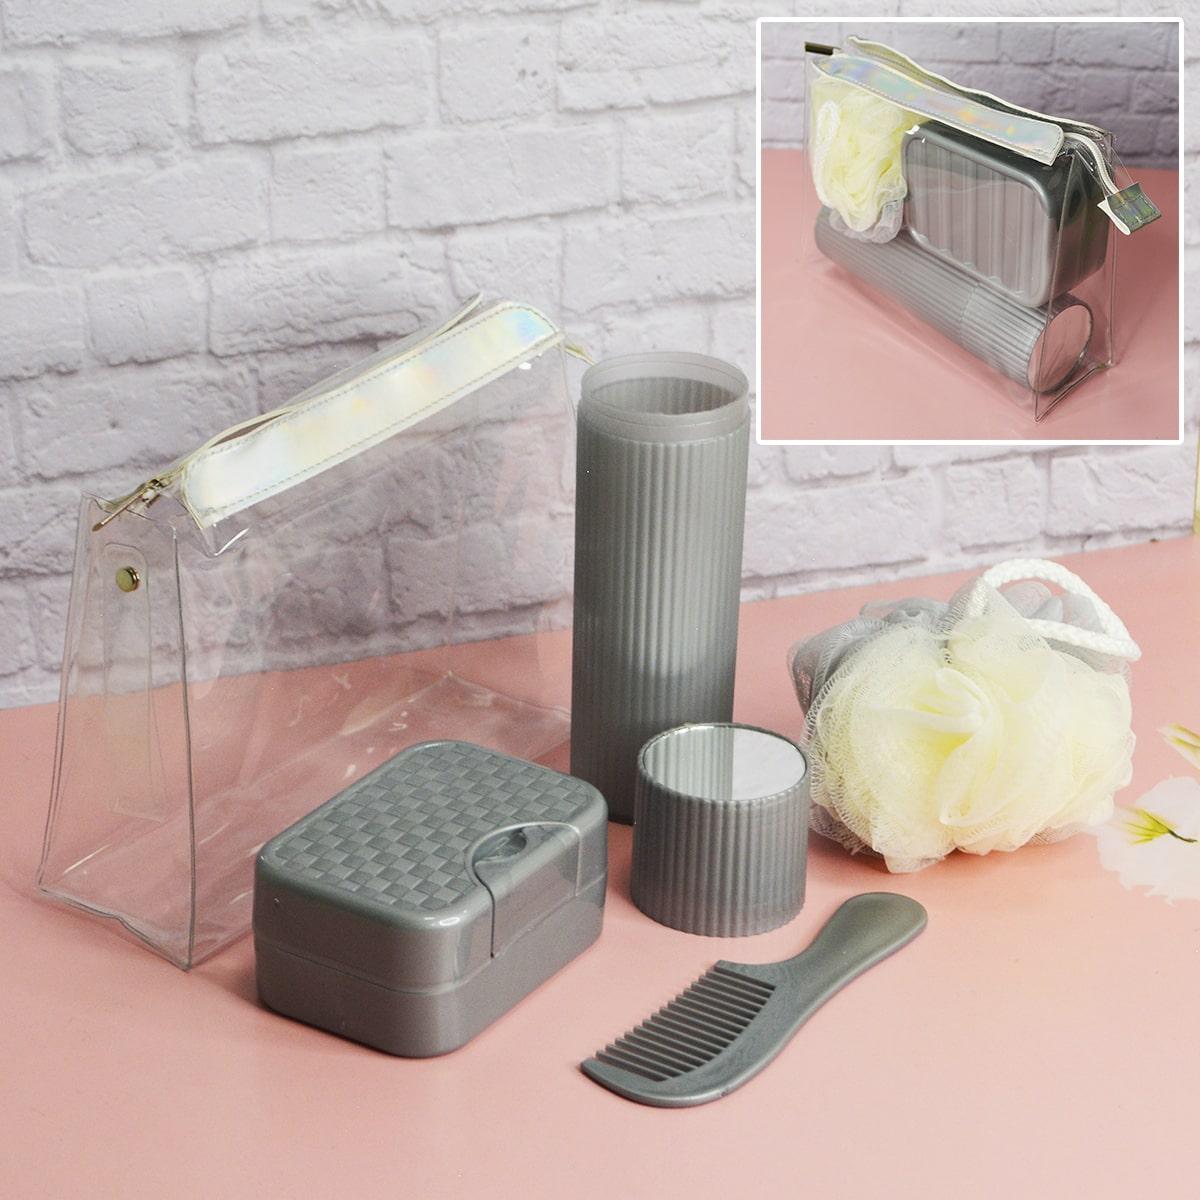 Банный дорожный набор 5 предметов (футляр для зубной щетки, вехотка, мыльница, расческа, косметичка) серый, фото 1